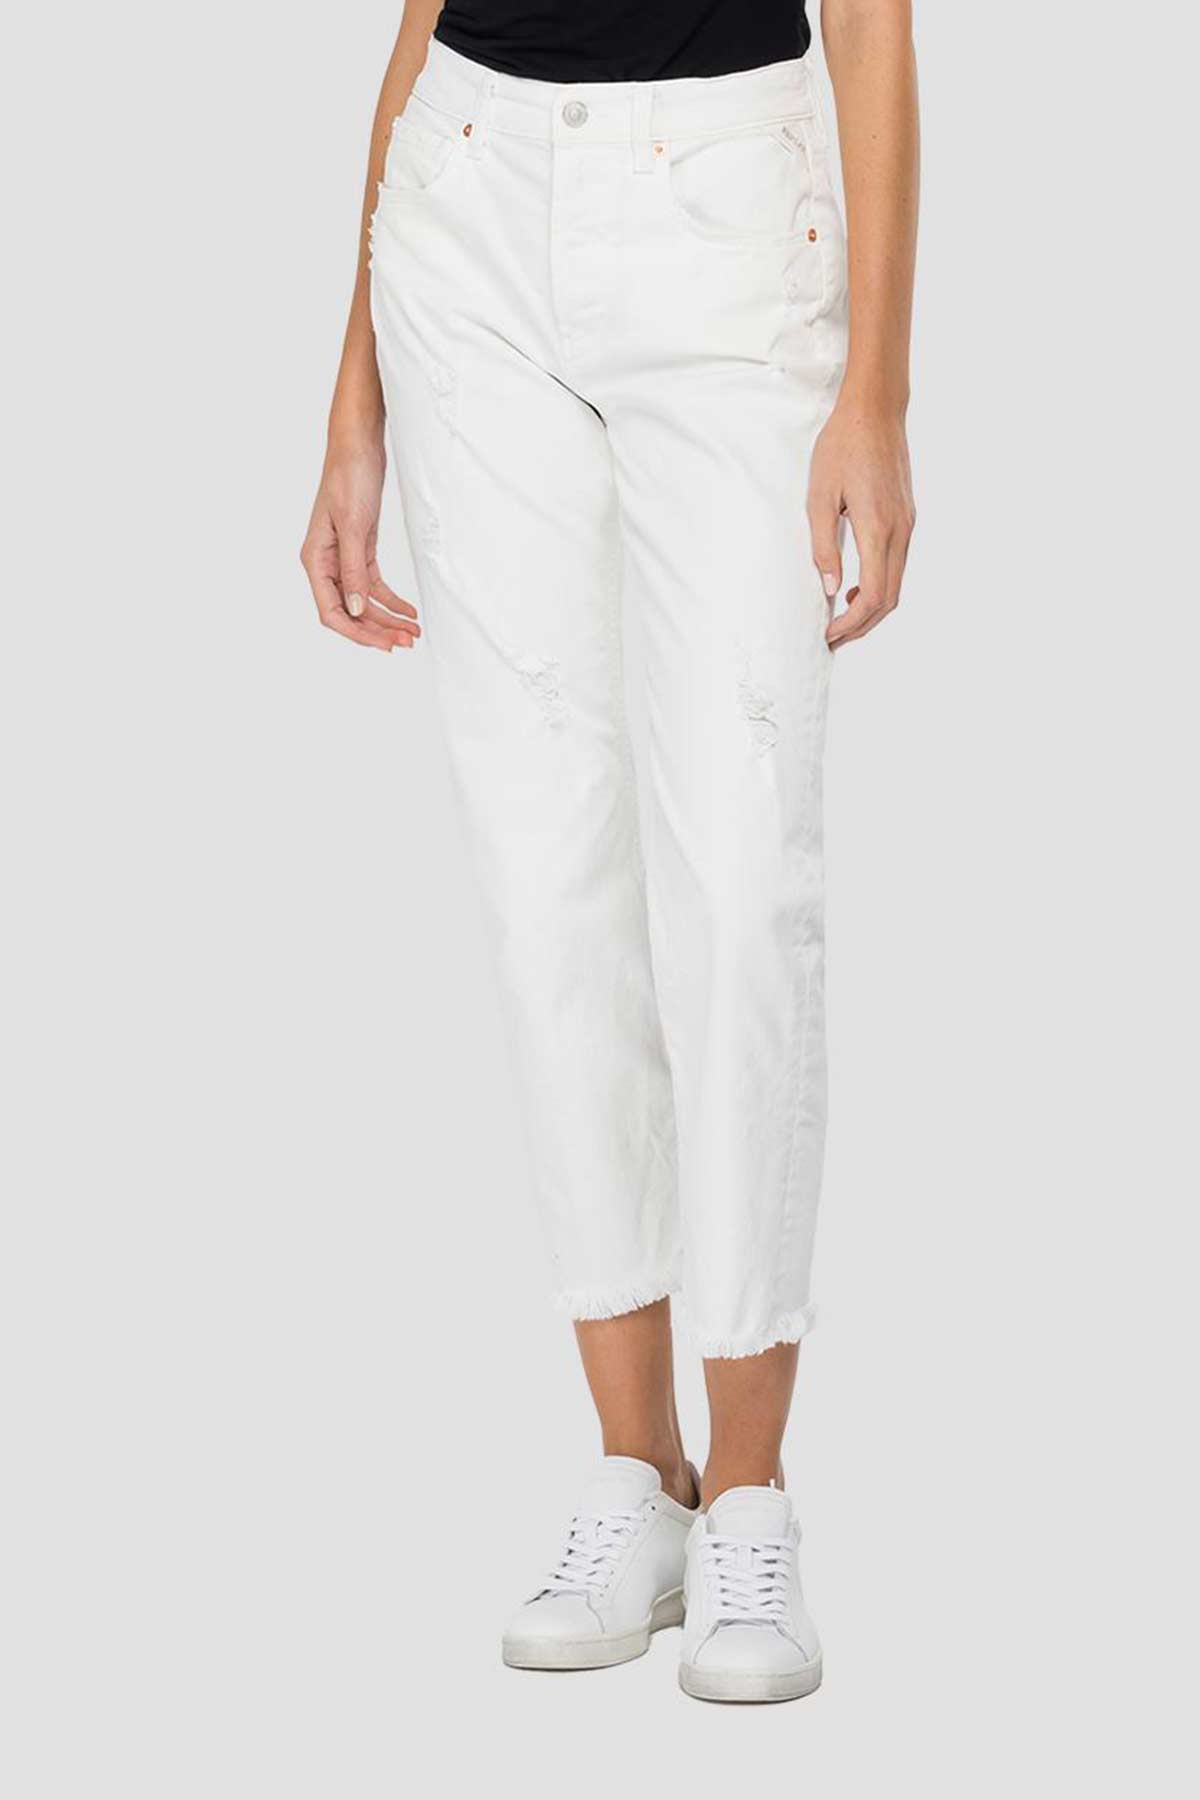 Replay Majike Yüksek Bel Straight Crop Paça Jeans-Libas Trendy Fashion Store